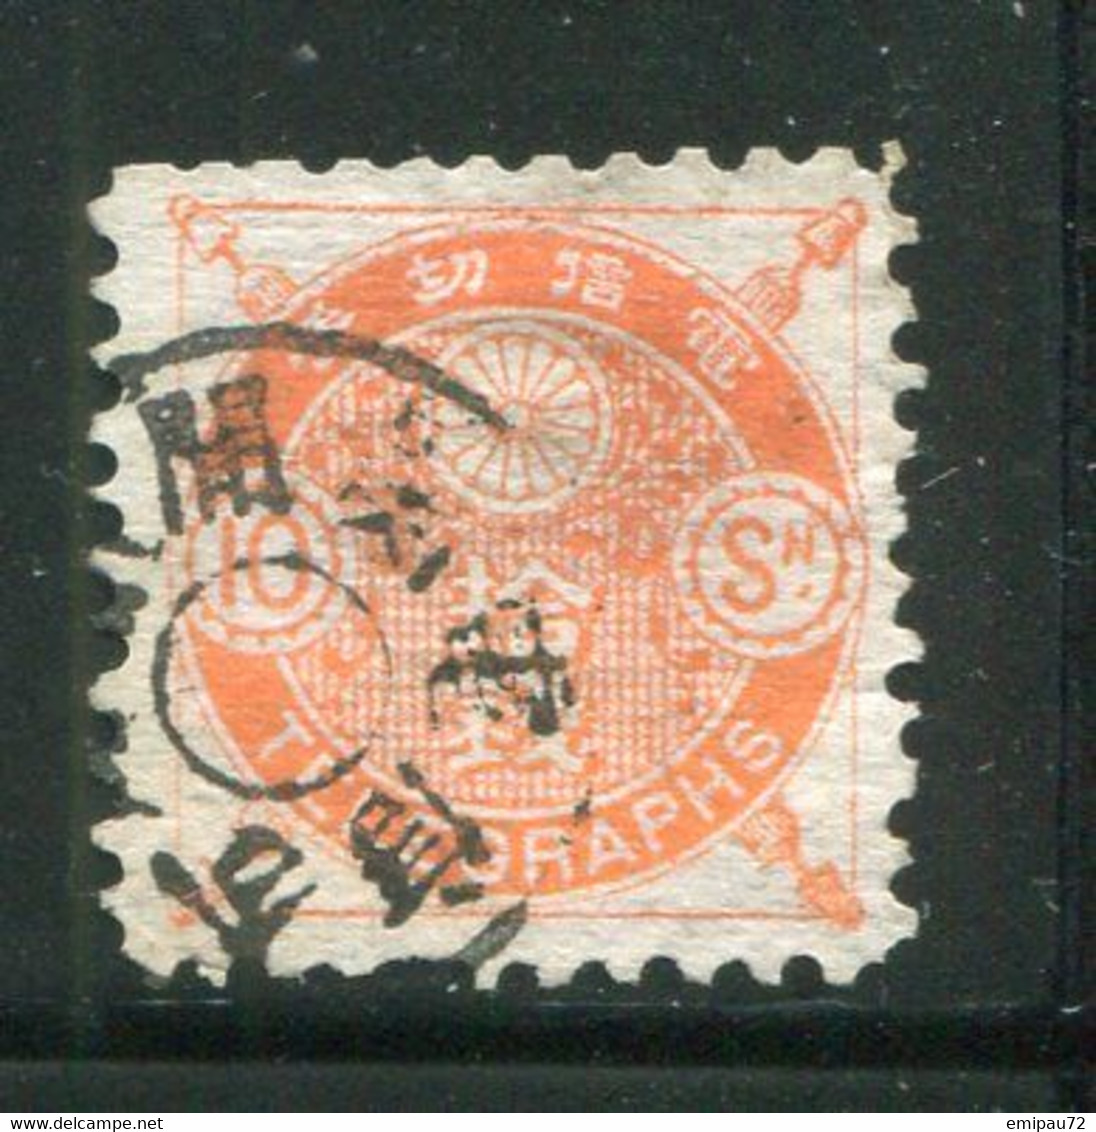 JAPON- Télégraphe Y&T N°6- Oblitéré - Telegraphenmarken